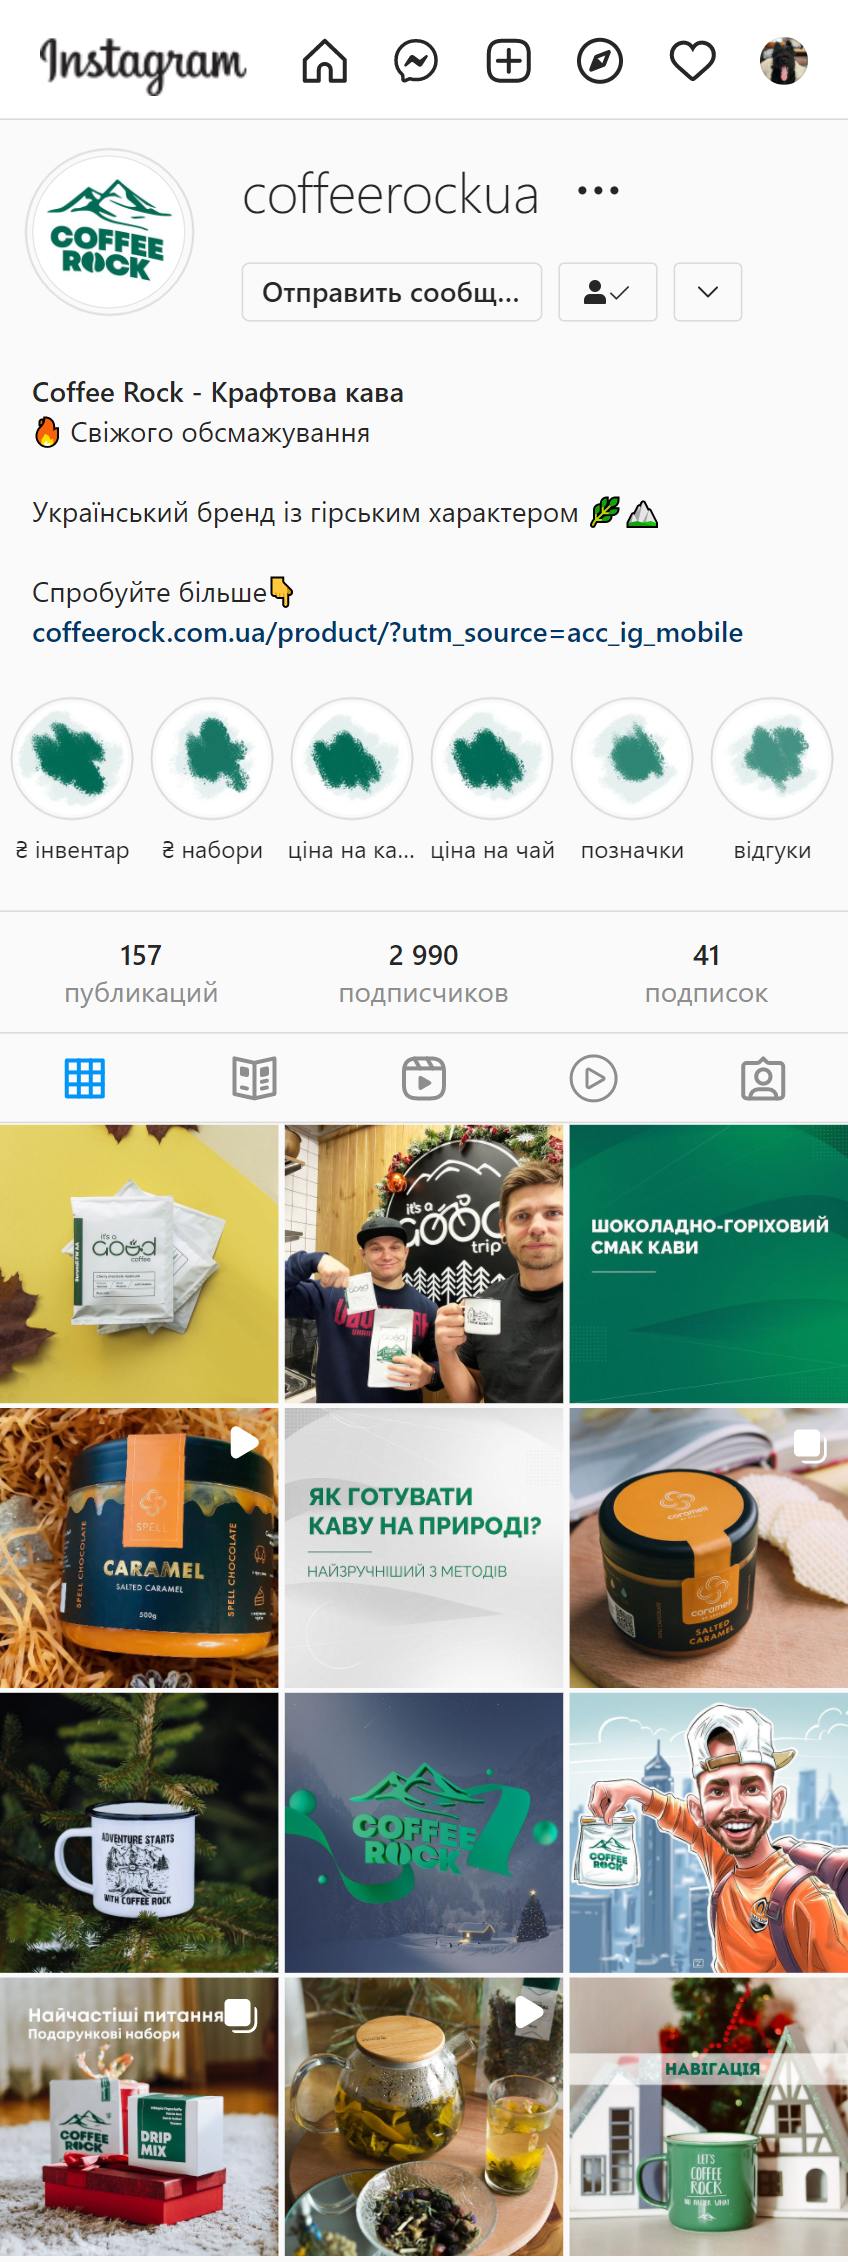 Дизайн сторінки інтернет-магазину Coffee Rock у Instagram